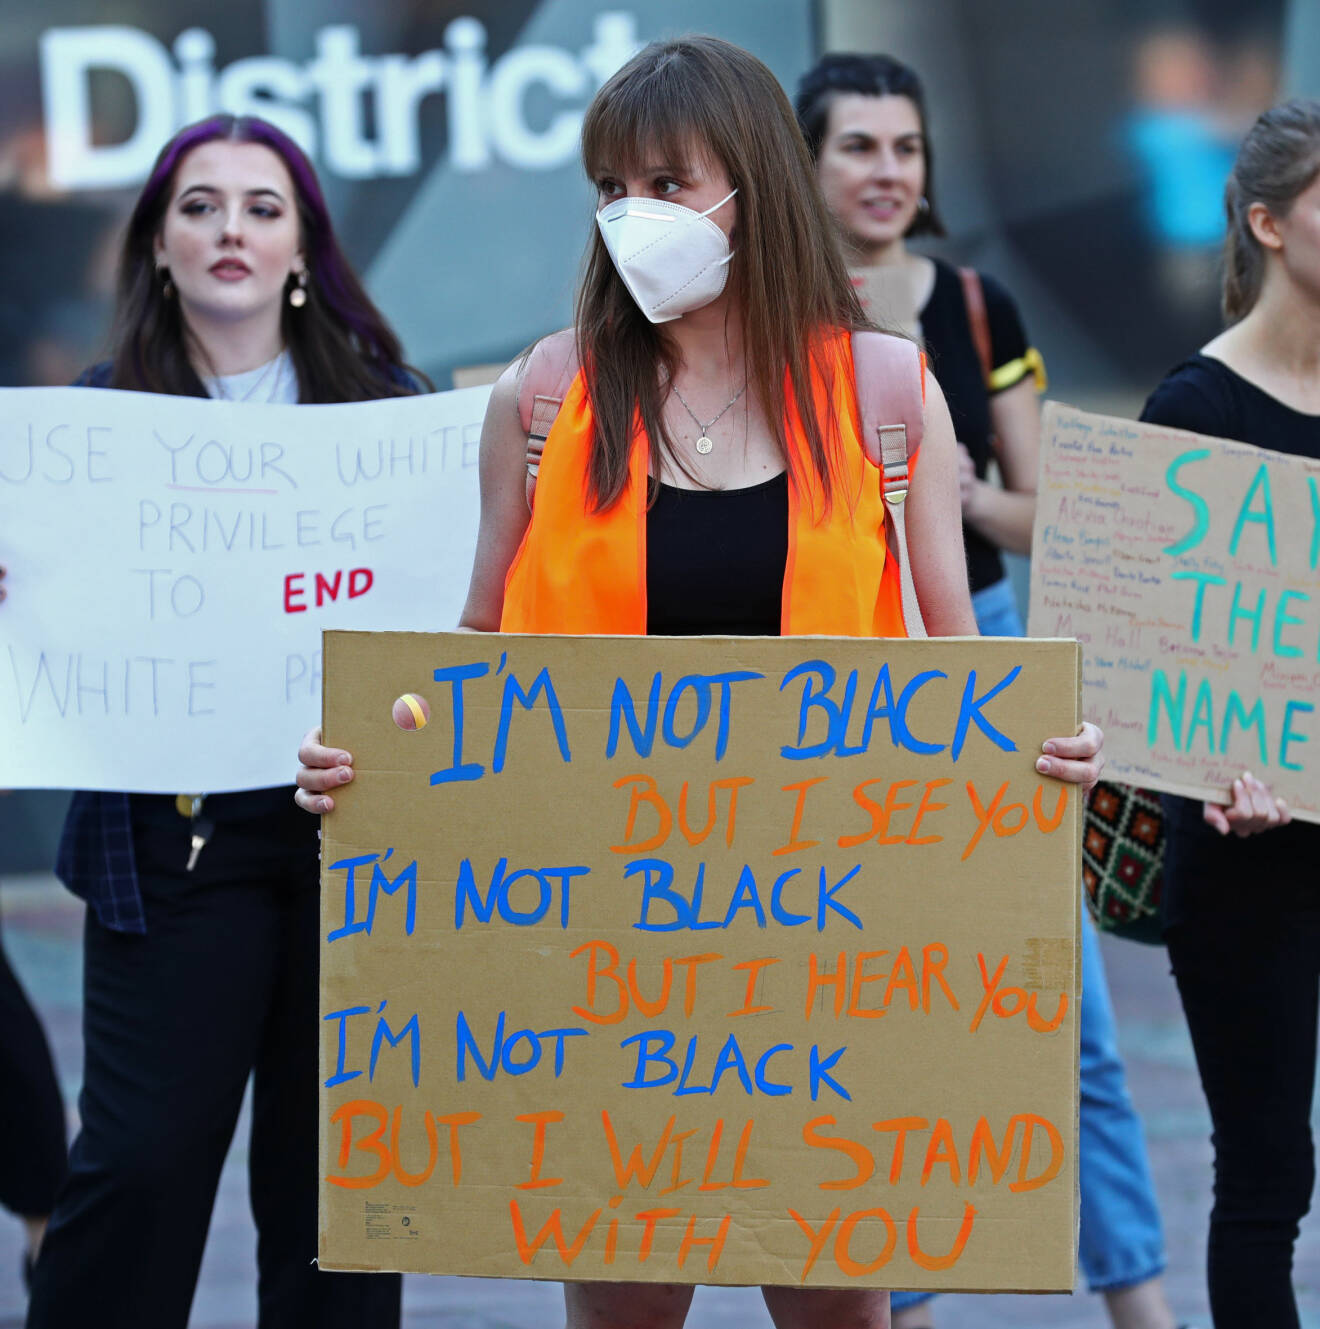 En kvinna med ansiktsmask håller upp en skylt med texten "I am not black, but I see you. I am not black, but I hear you. I am not black, but I will stand with you".